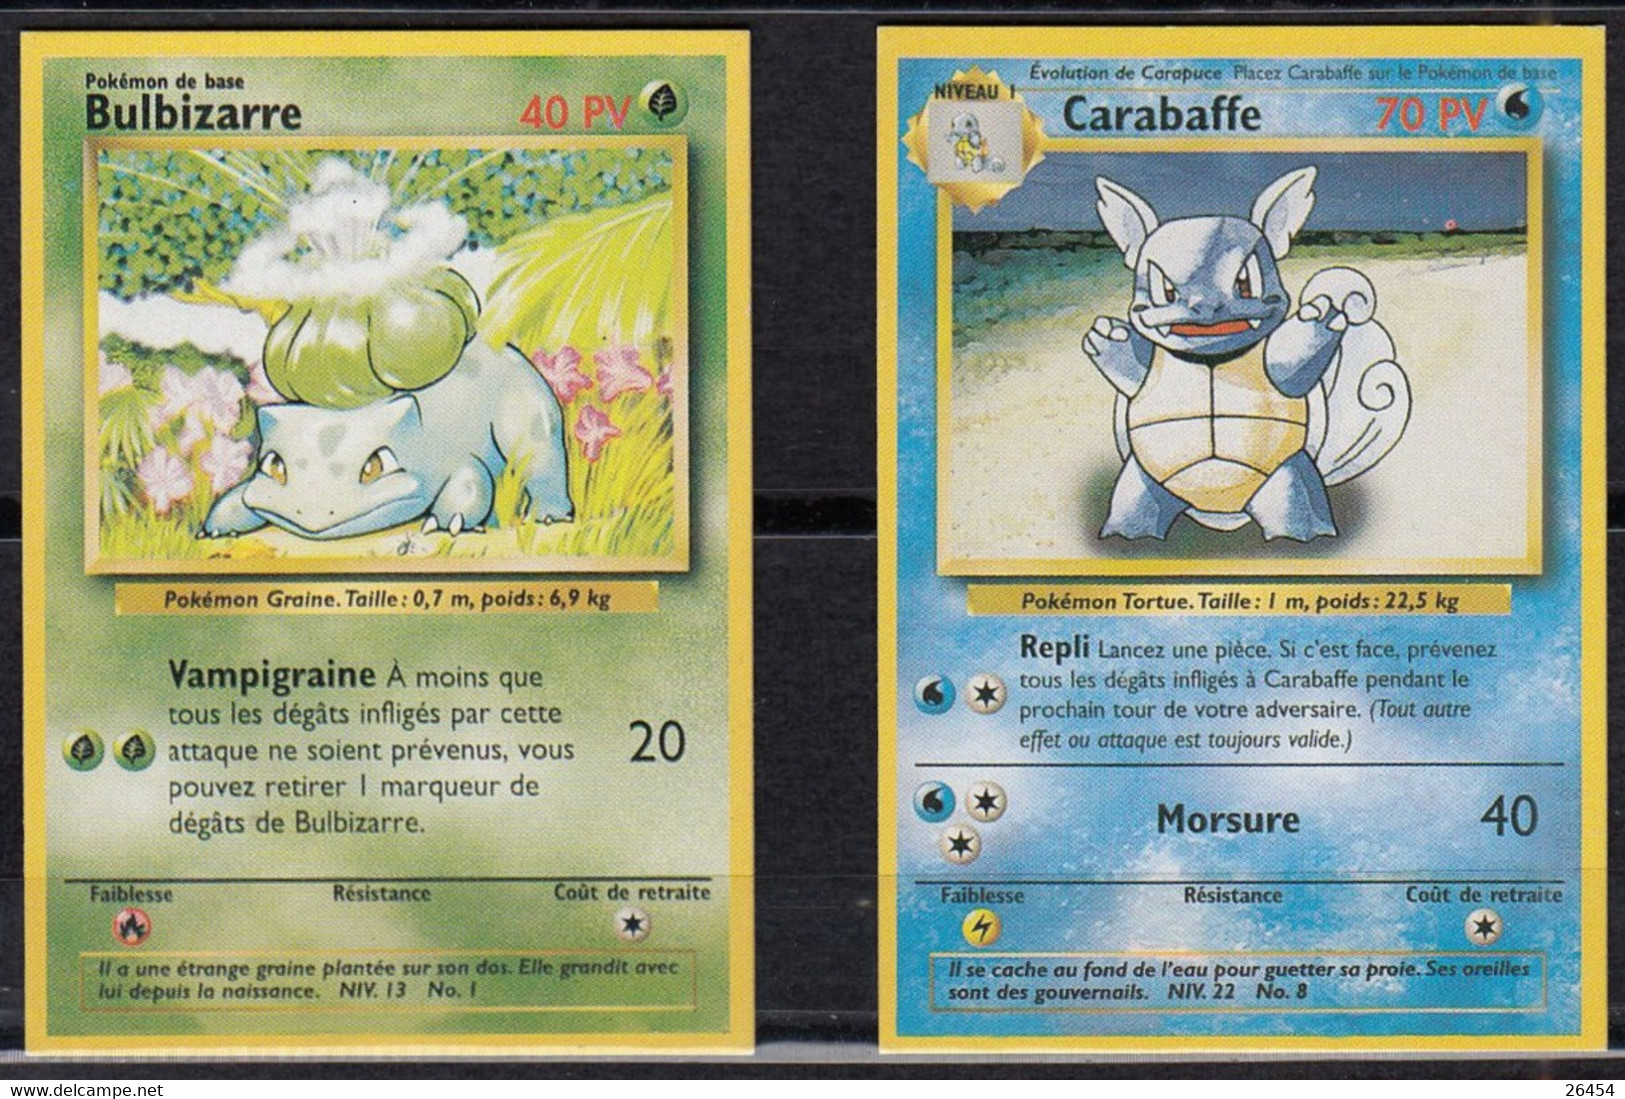 Lot #4 de 40 cartes Pokémon Origine Perdue et Pokemon Go avec 1 brillante  et 1 rare (aucune double) .:. Grenier du Geek